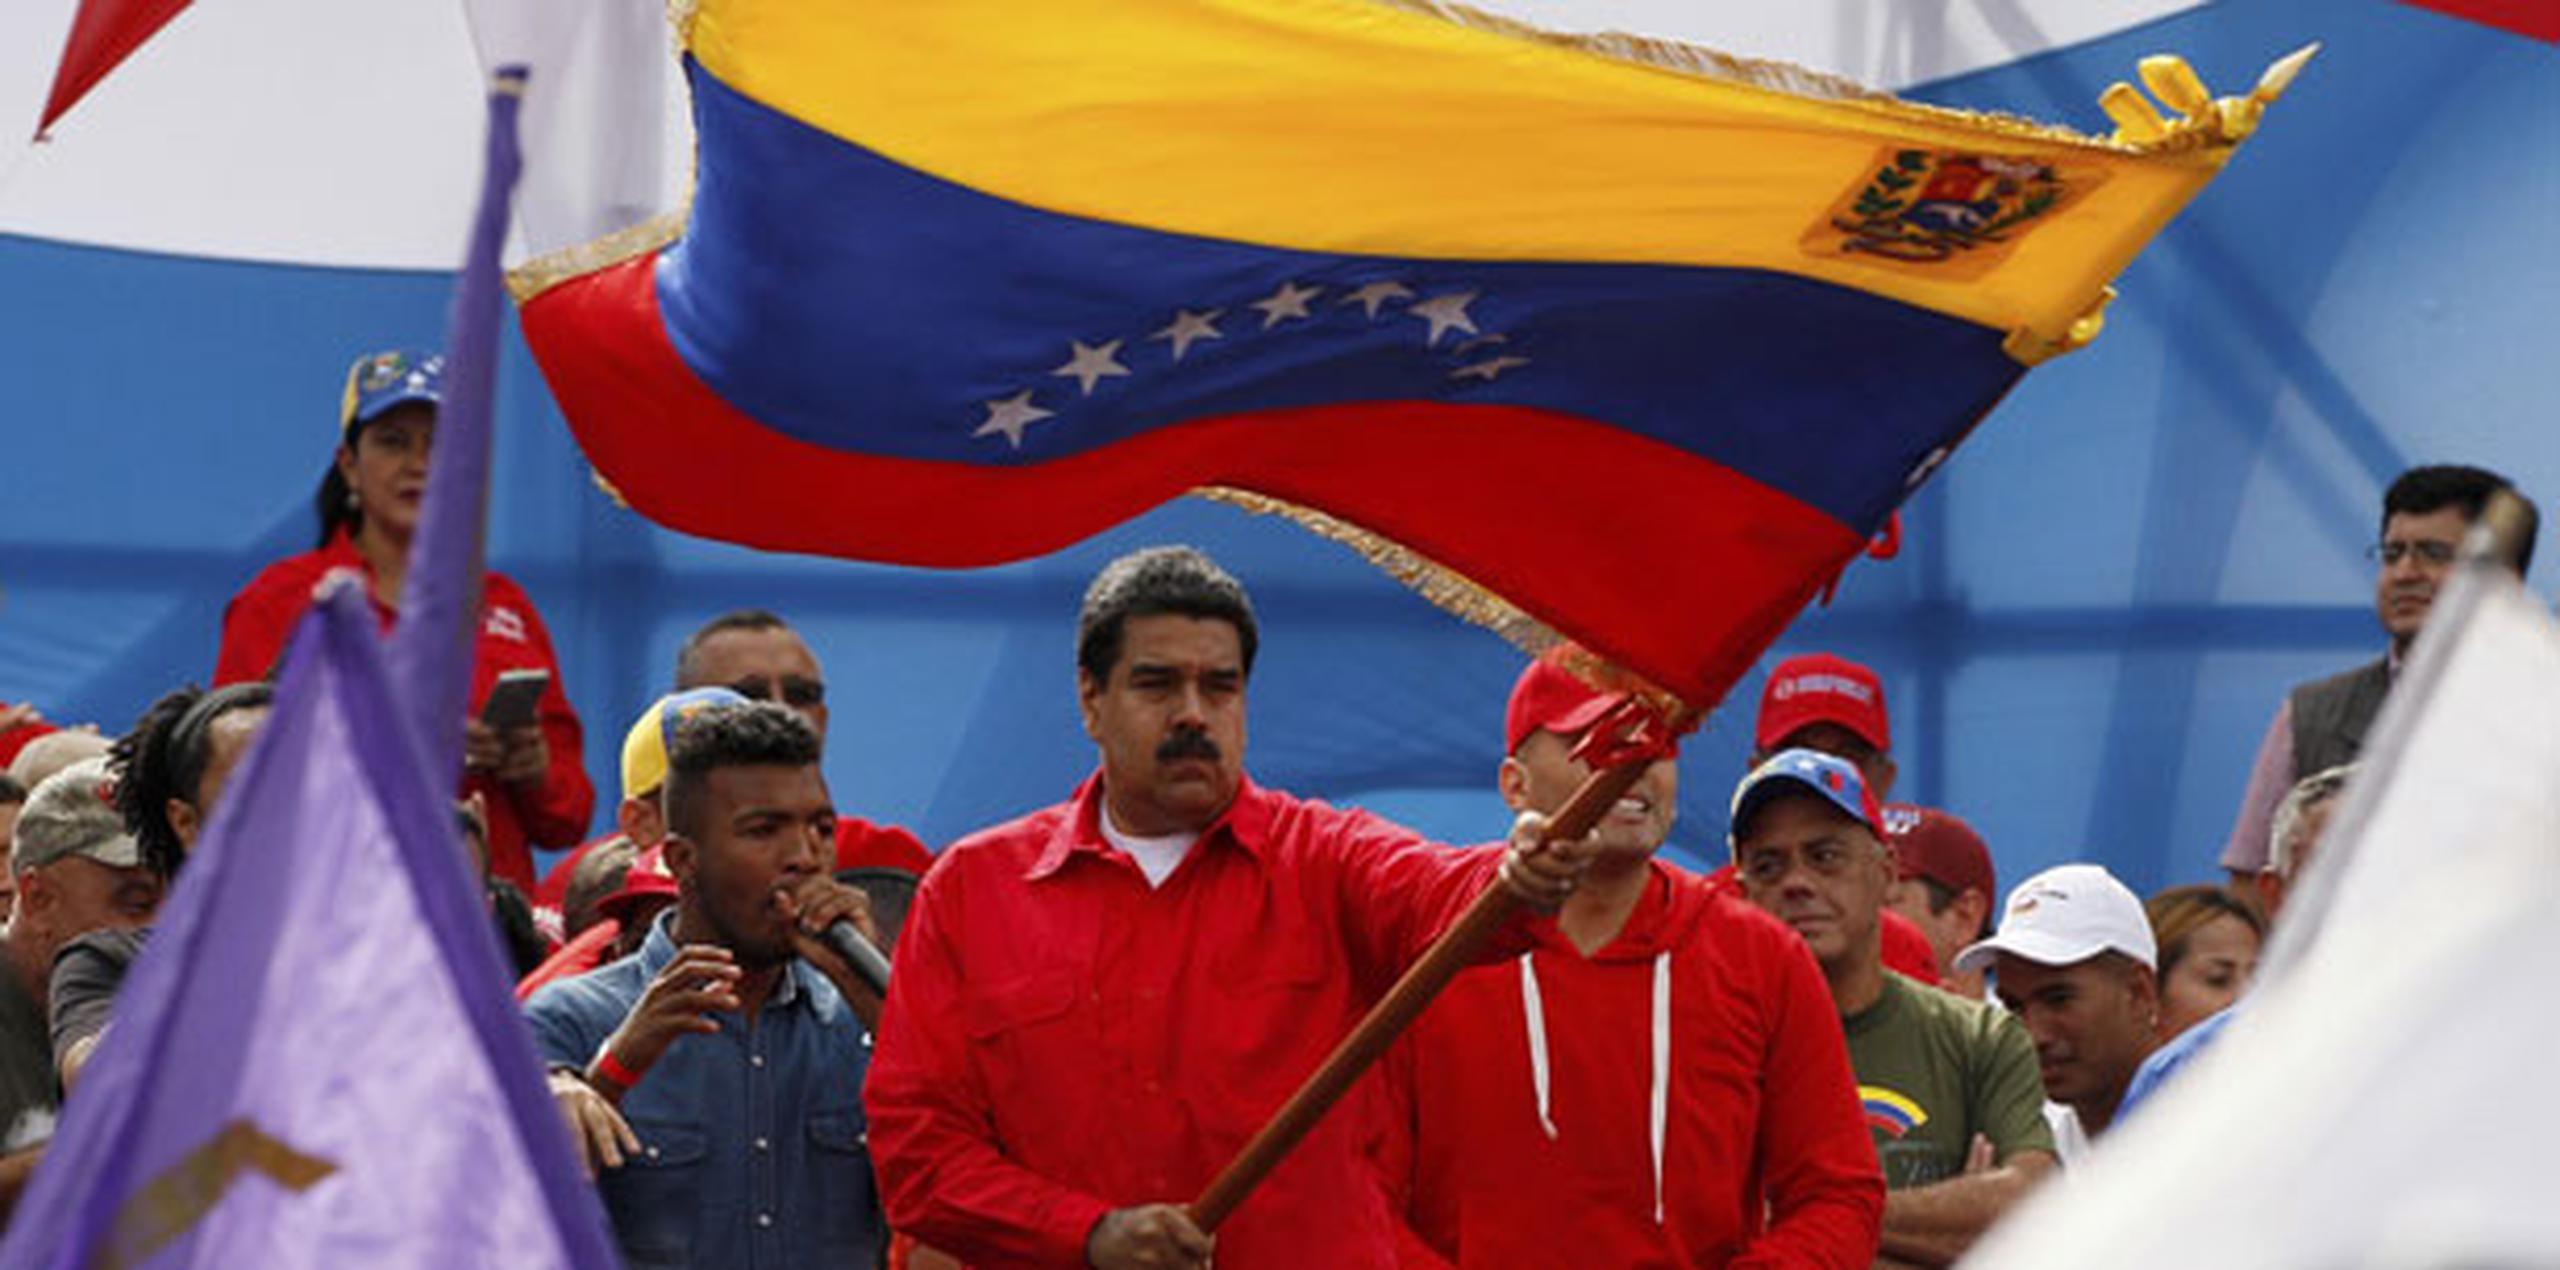 Entre los primeros votantes estuvo Maduro, quien al amanecer acudió acompañado de la primera dama y candidata a constituyente, Cilia Flores, a un centro electoral del oeste de la capital.  (AP)